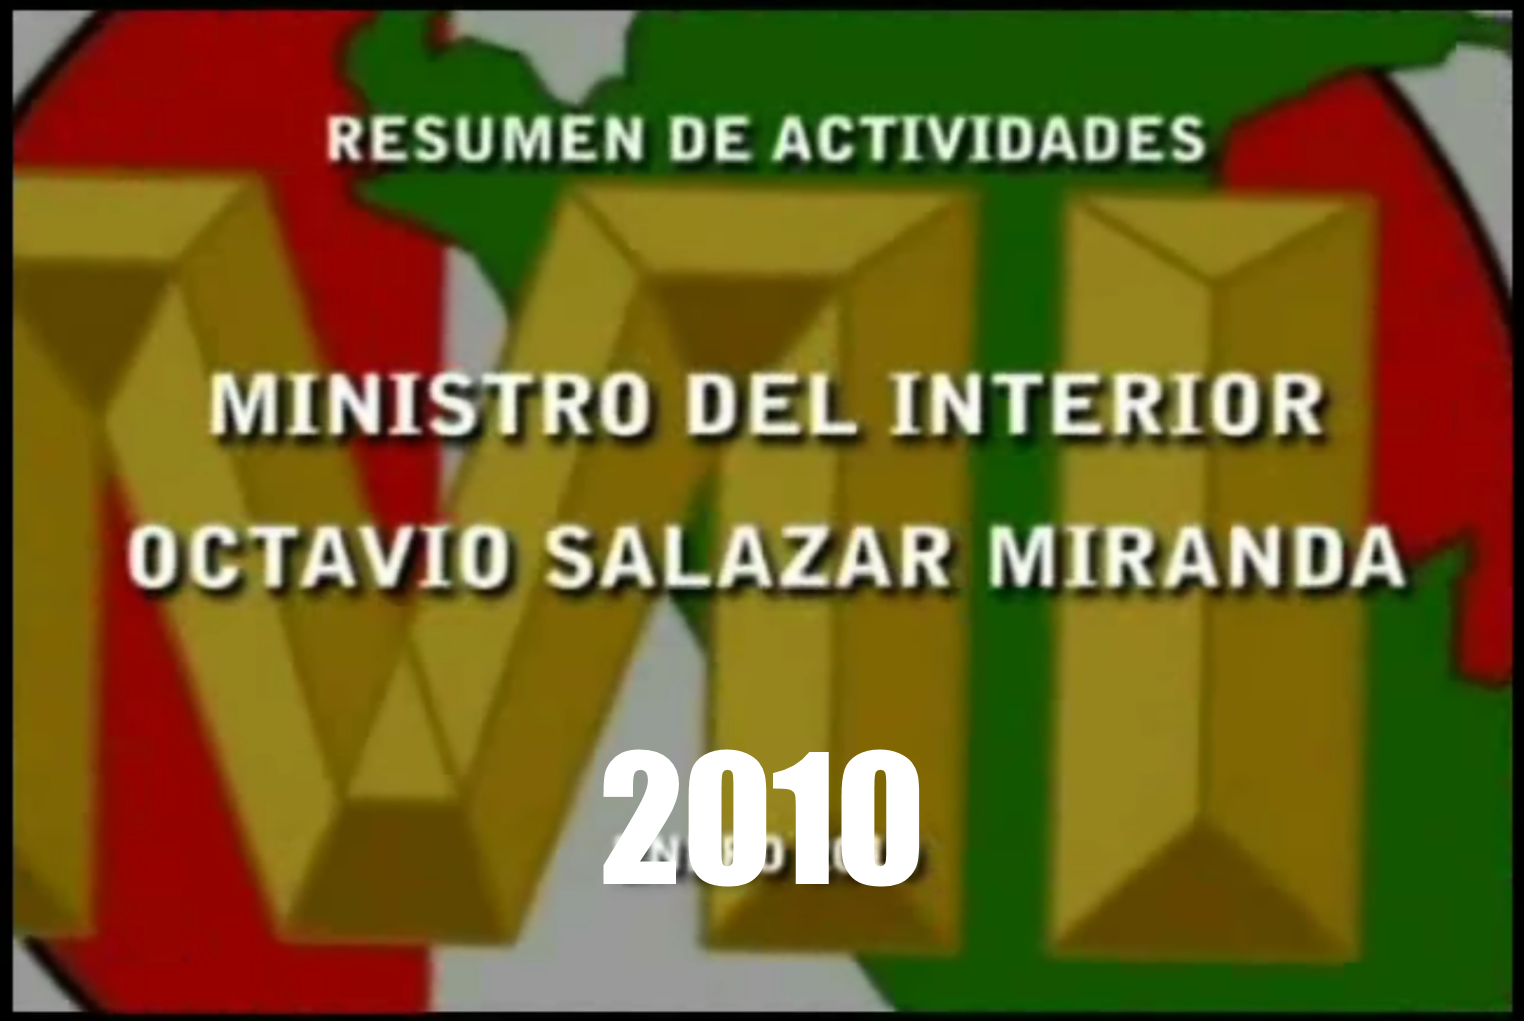 MINISTRO DEL INTERIOR 2009-2010